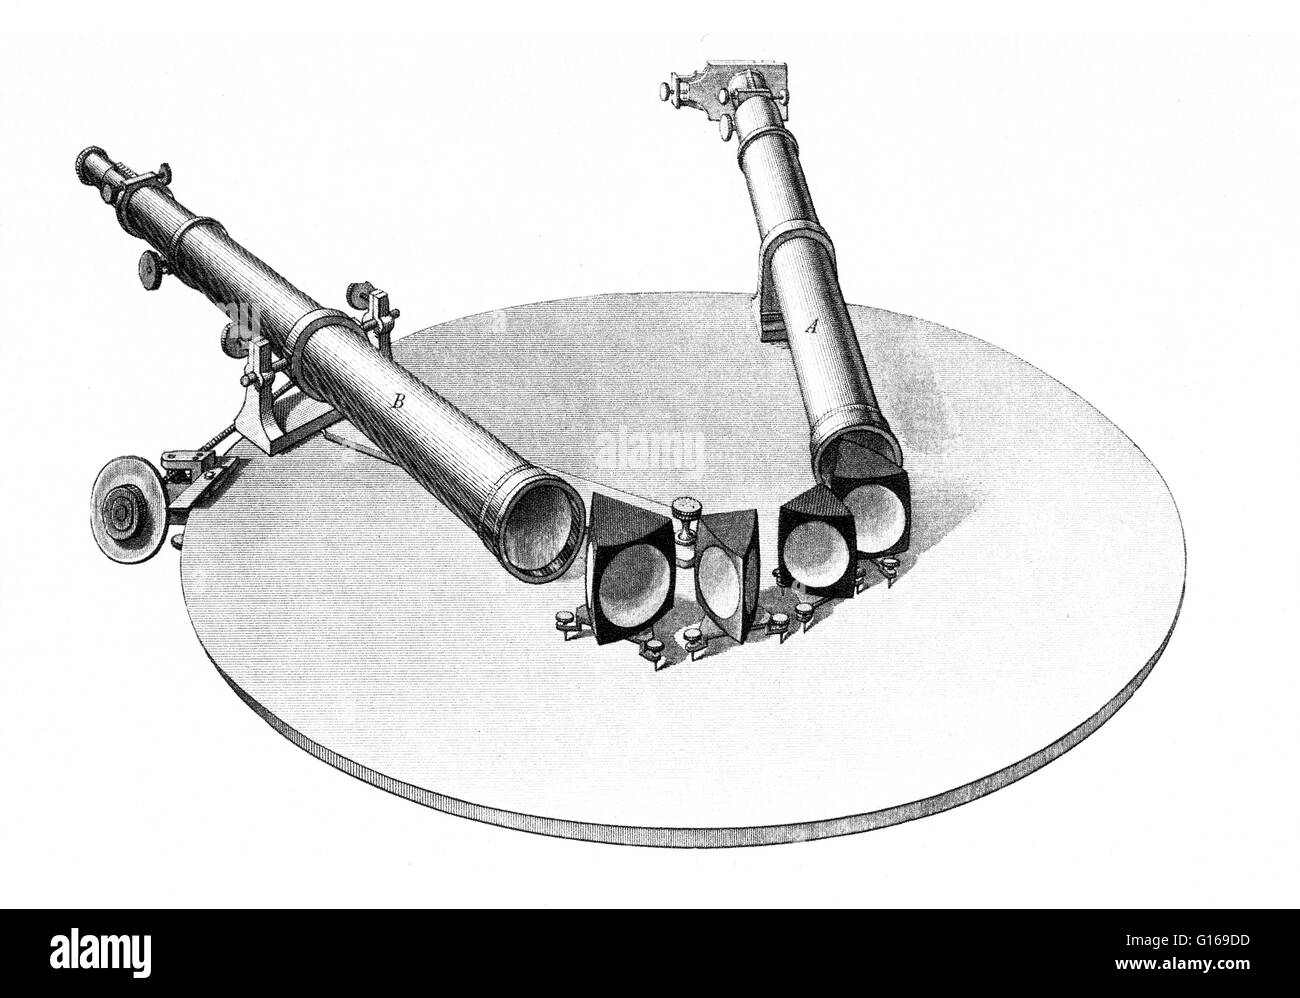 Beispiel für ein Spektroskop entnommen die 1861 deutsche Ausgabe von Kirchoff, Studien über das Sonnenspektrum und die Spektren der chemischen Elemente. 1855 hatte Robert Bunsen Bunsenbrenner für den Einsatz in Flamme Tests verschiedener Metalle und Salz geschaffen. Stockfoto